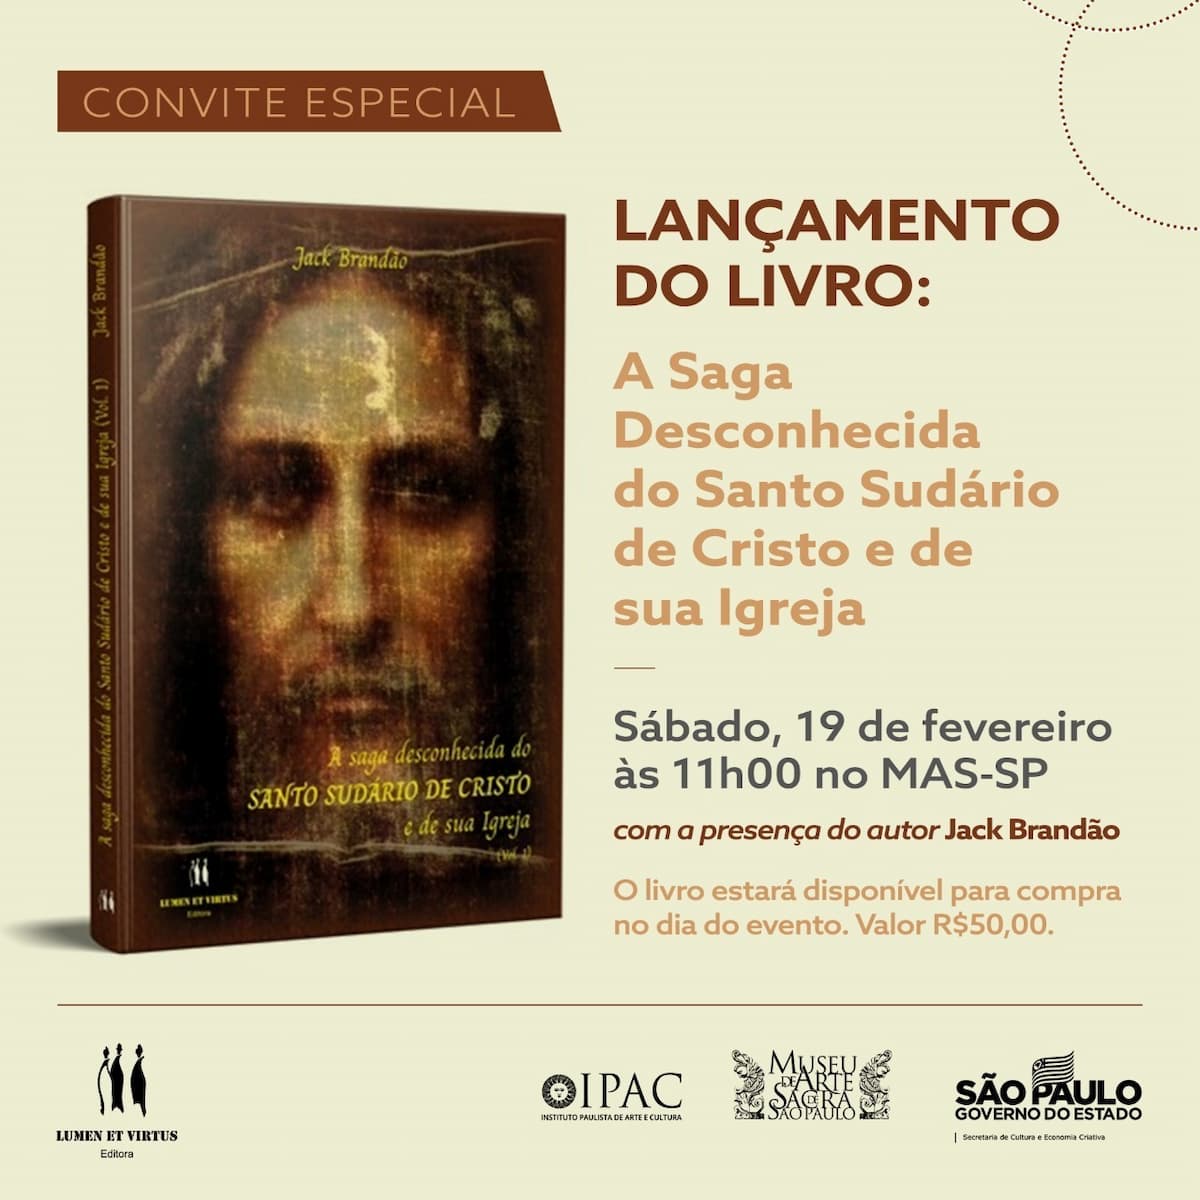 Livro "A saga desconhecida do SUDÁRIO DE CRISTO e de sua Igreja", Книга - Обложка, приглашение. Раскрытие.